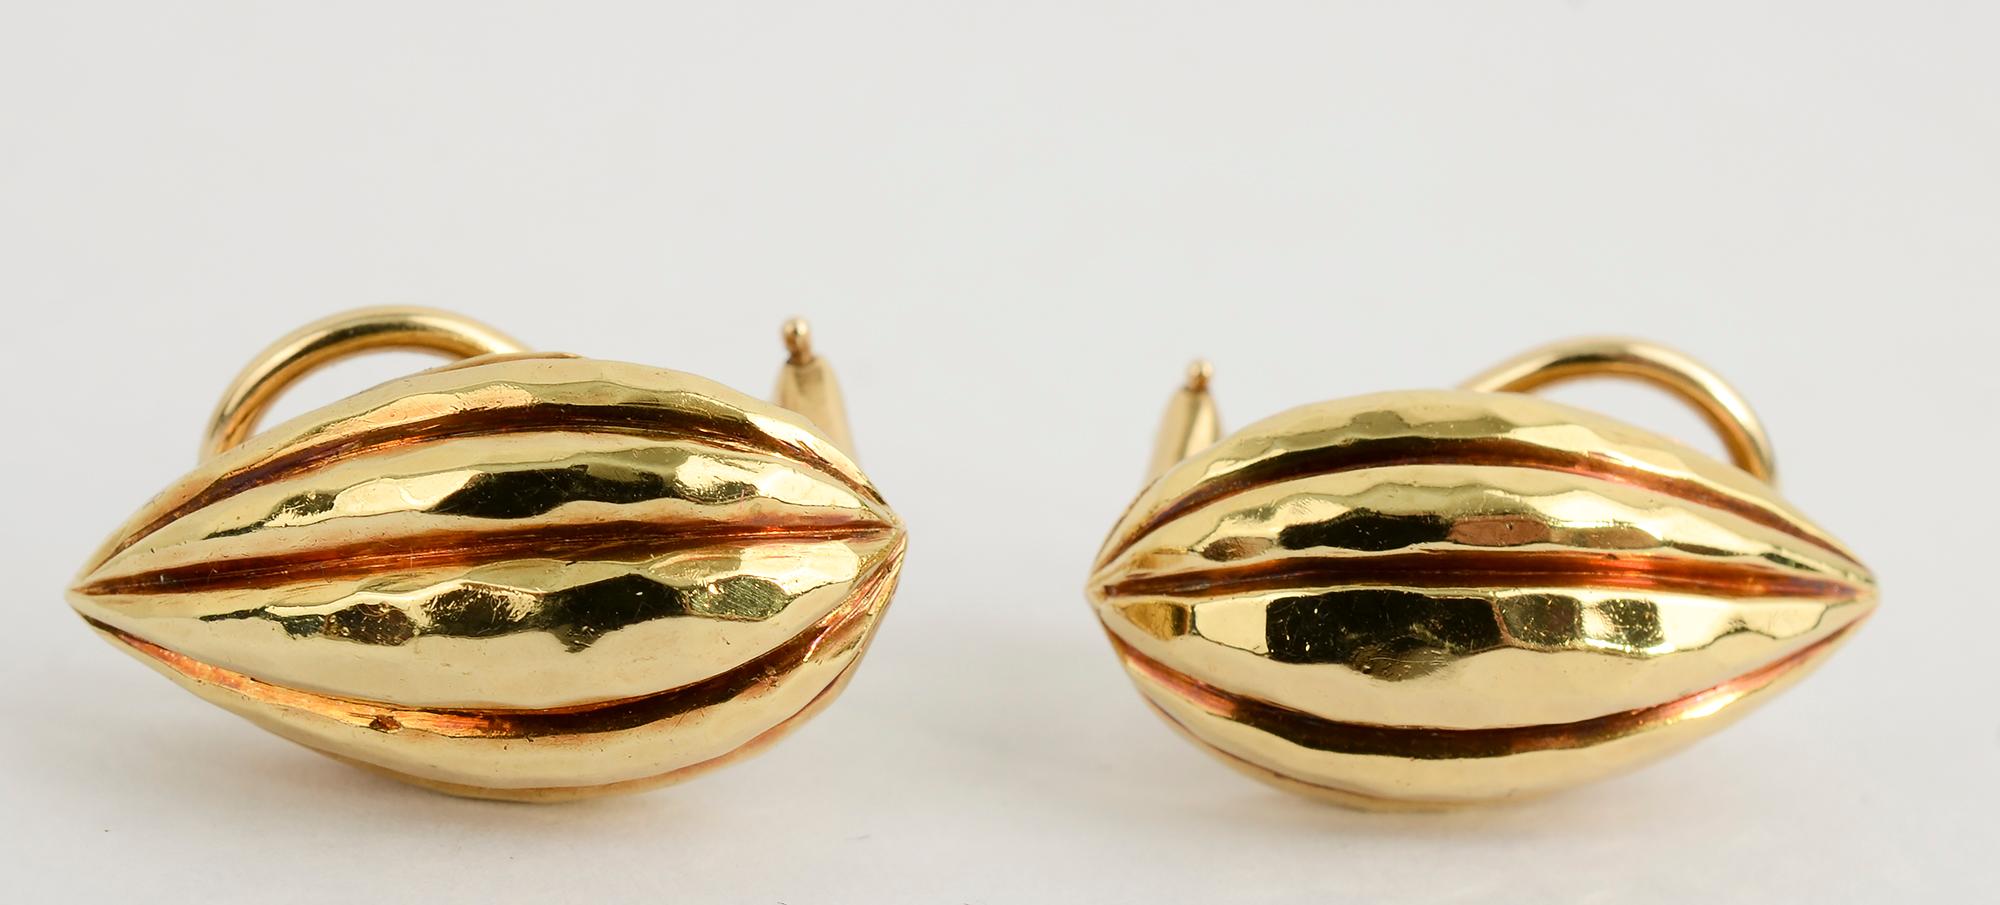 Birnenförmige Ohrringe des amerikanischen Designers Henry Dunay. Die Ohrringe sind mit einer seiner charakteristischen Veredelungen aus gehämmertem Gold gefertigt. Die Maße sind 7/16